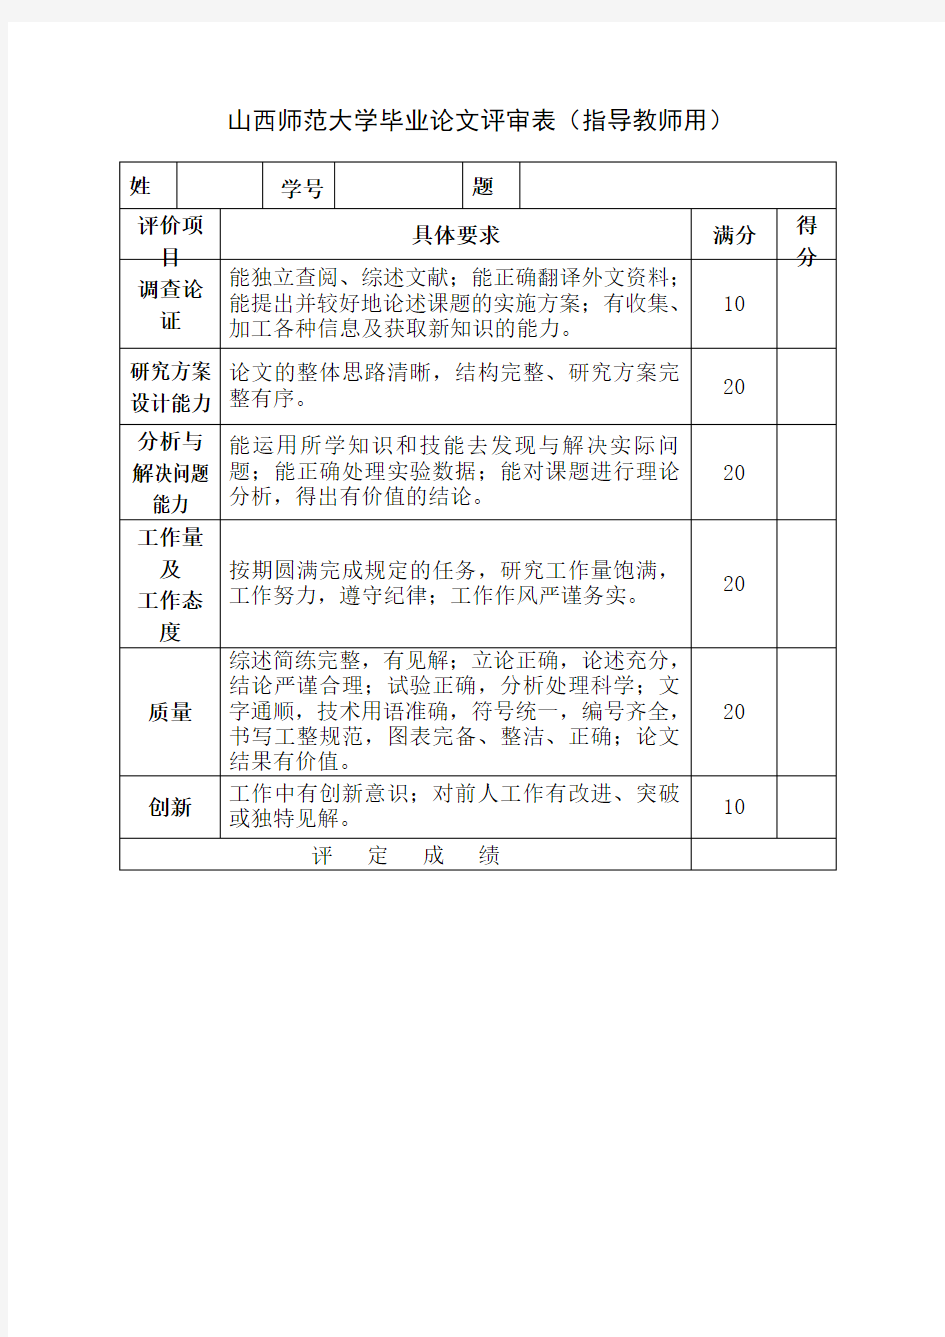 山西师范大学毕业论文评审表(指导教师用)